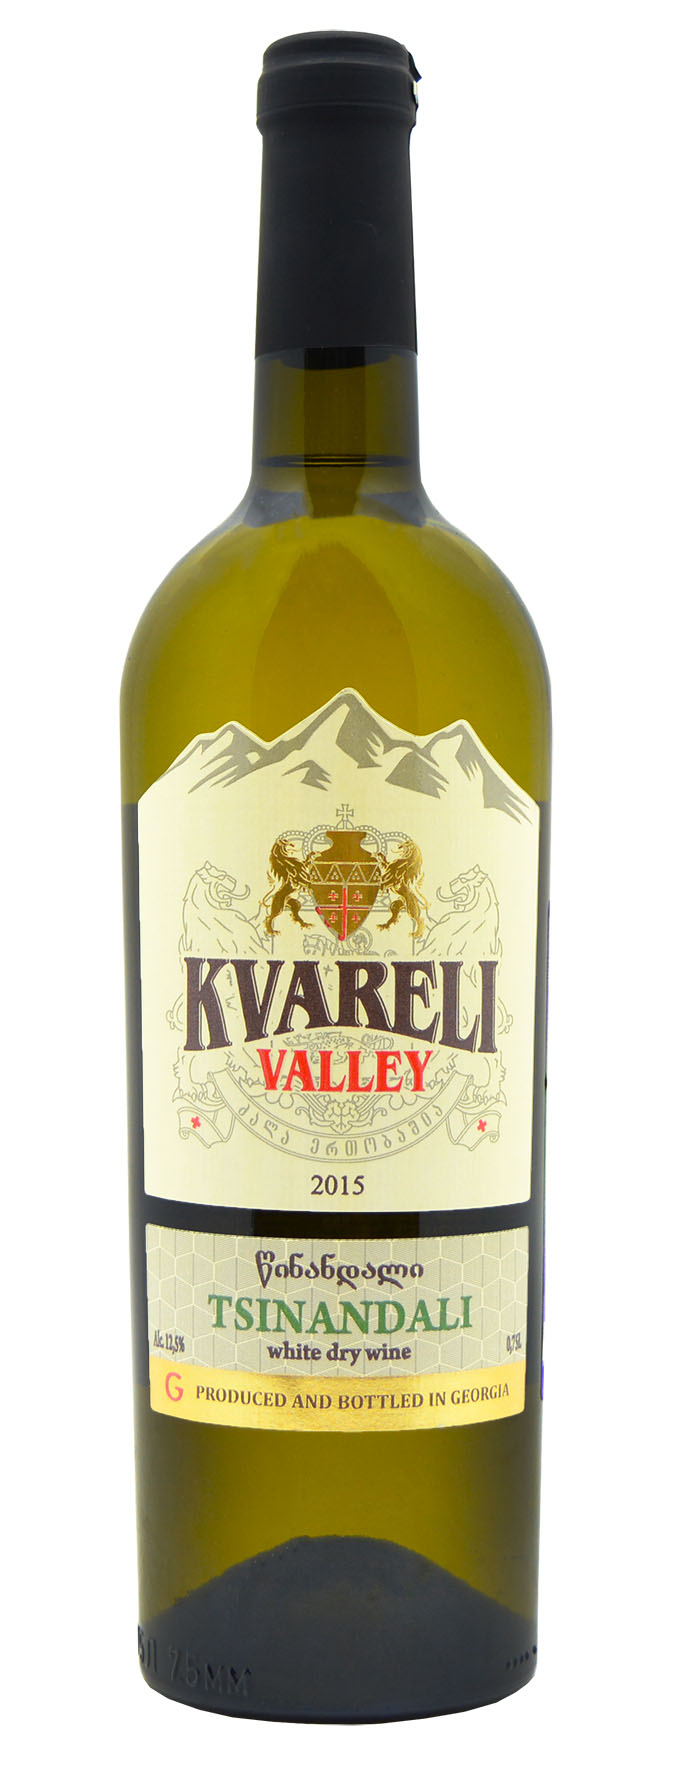 Вино «KVARELI VALLEY» TSINANDALI, белое сухое, защищенного наименования места происхождения - регион Кахетия, 0,7 л.